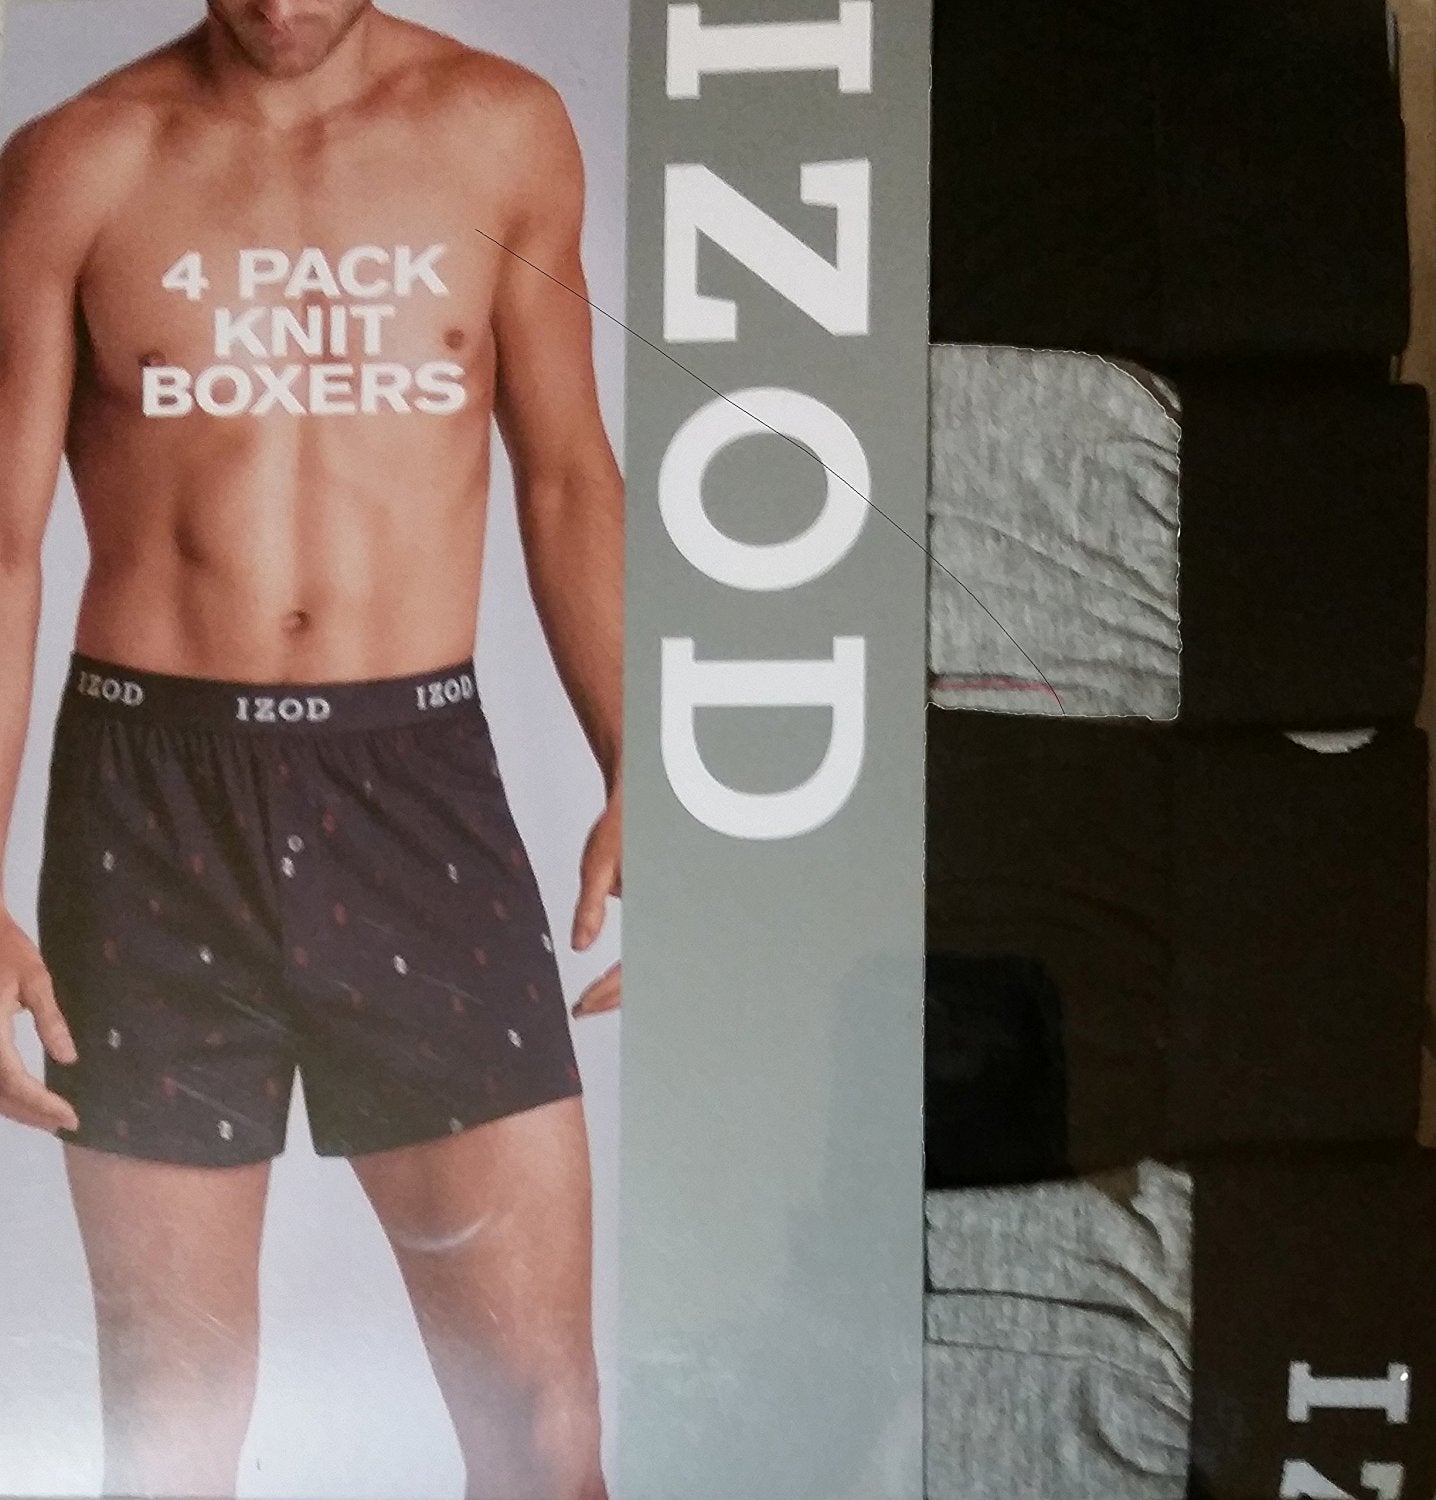 IZOD Mens Cotton Knit Boxers 4-pack (L 36-38) - ADDROS.COM